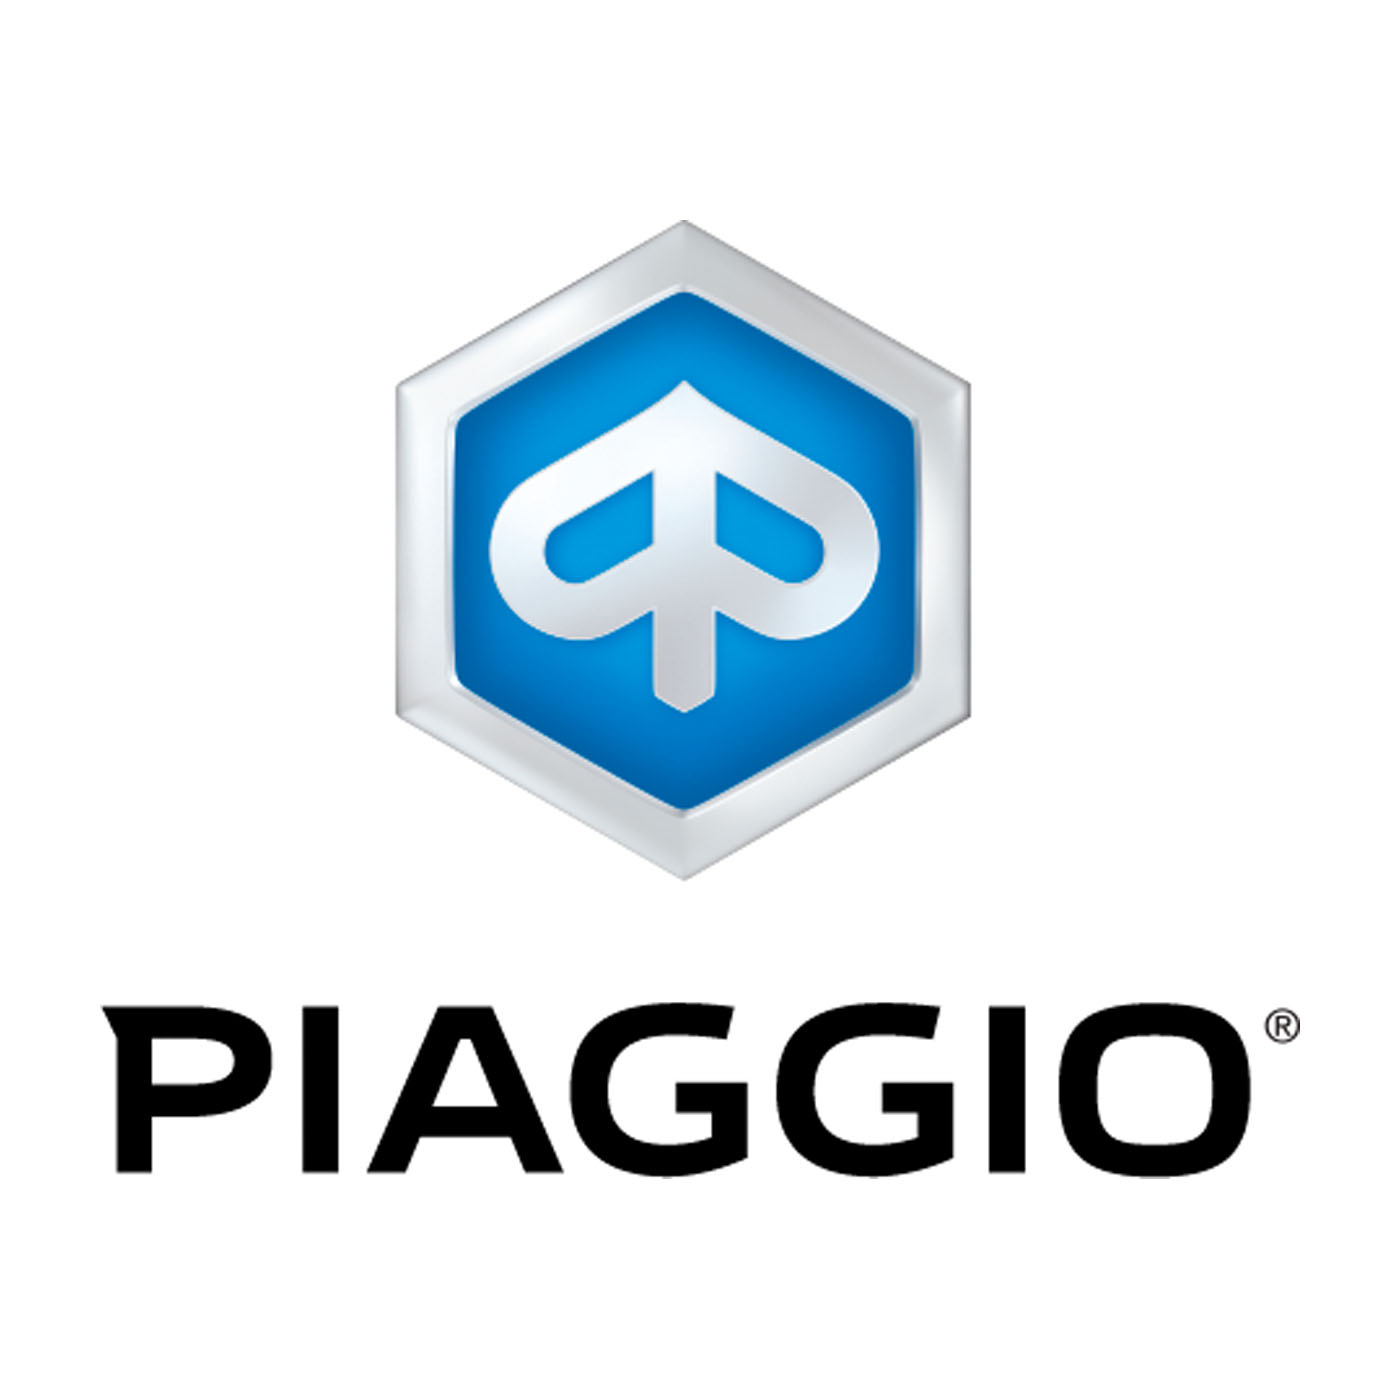 Piaggio_logo